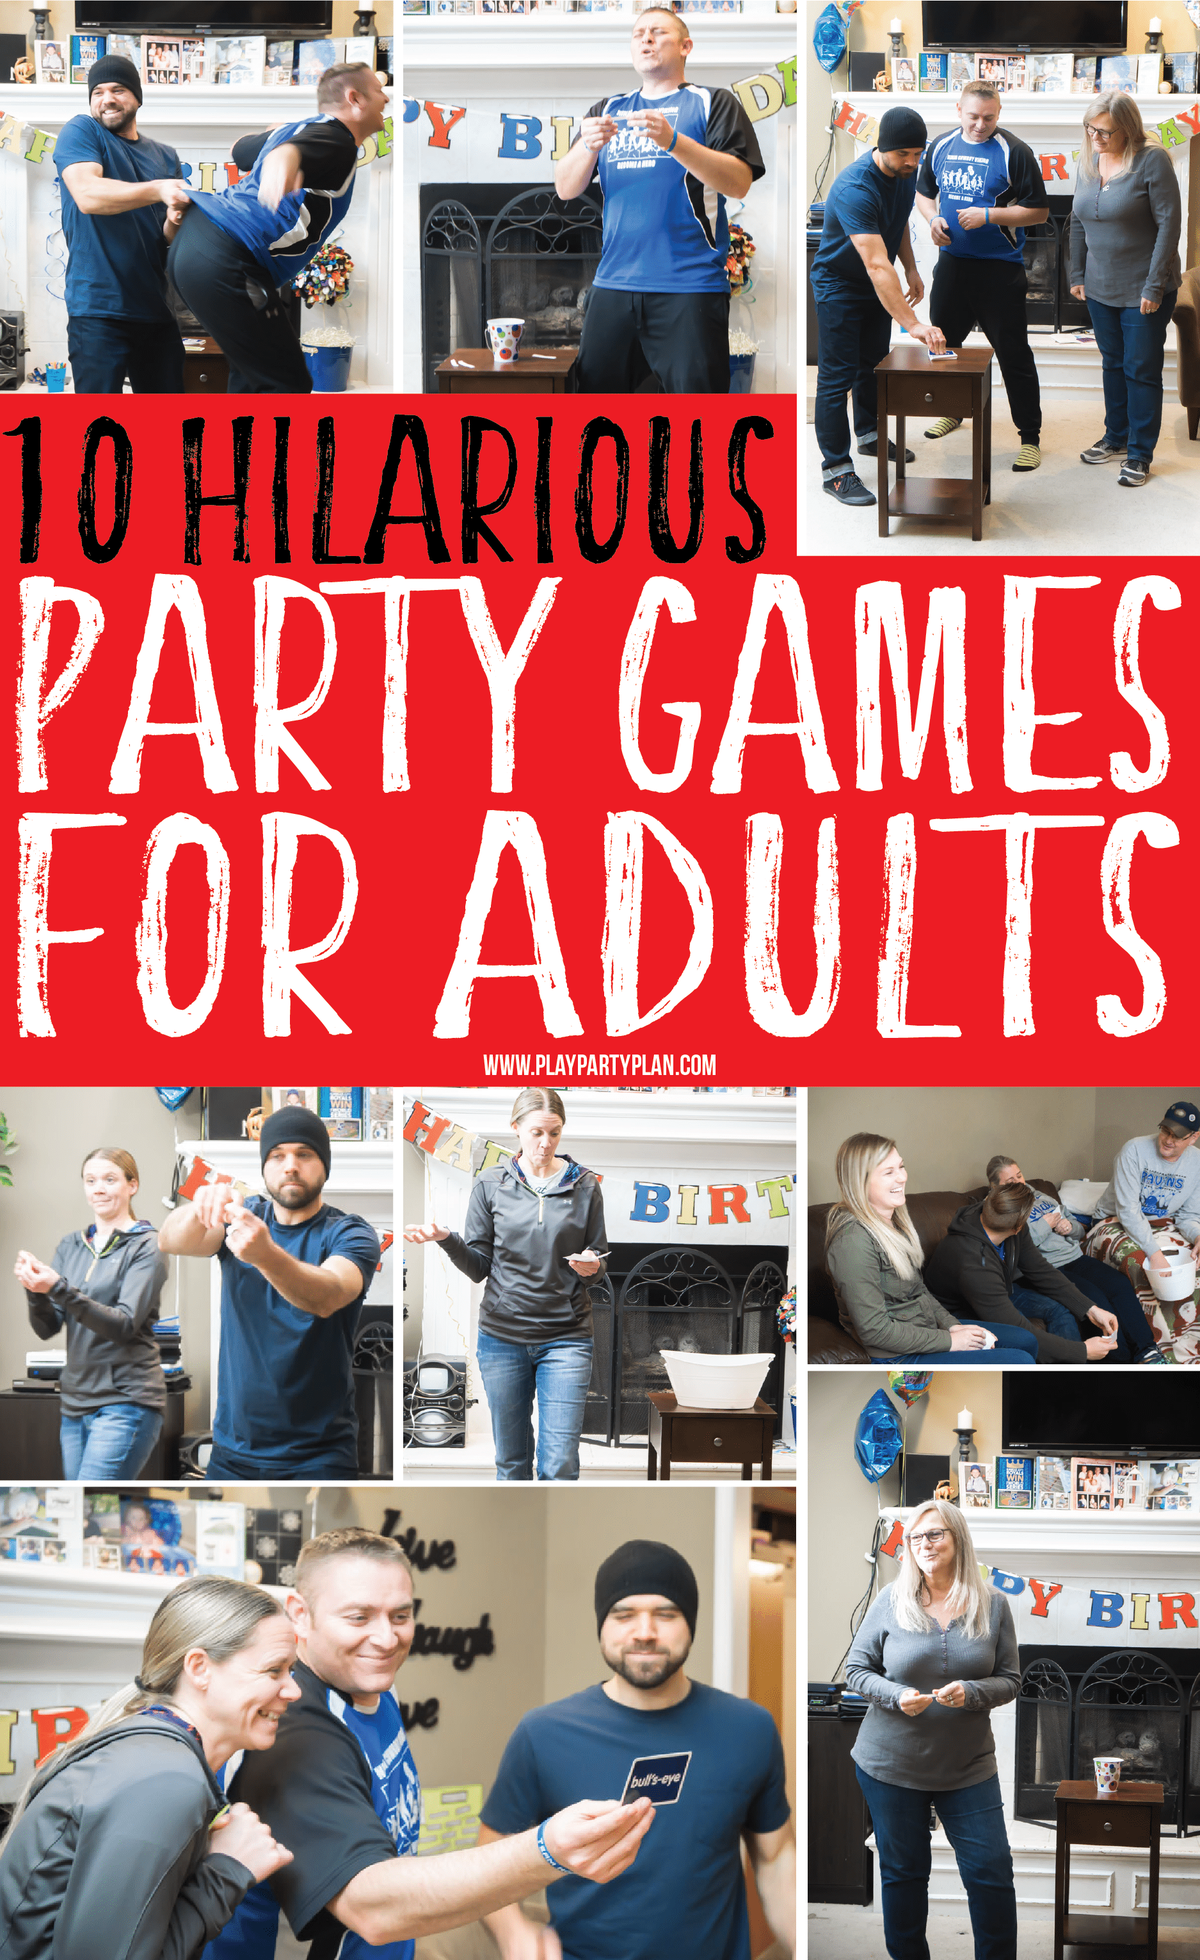 10 веселых игр для вечеринок для взрослых, которые отлично подойдут как для подростков, так и для групп! Играйте в помещении или на улице на семейном празднике или дне рождения! Не беда, они все равно смешные! И, что самое главное, не нужно пить или алкоголь!